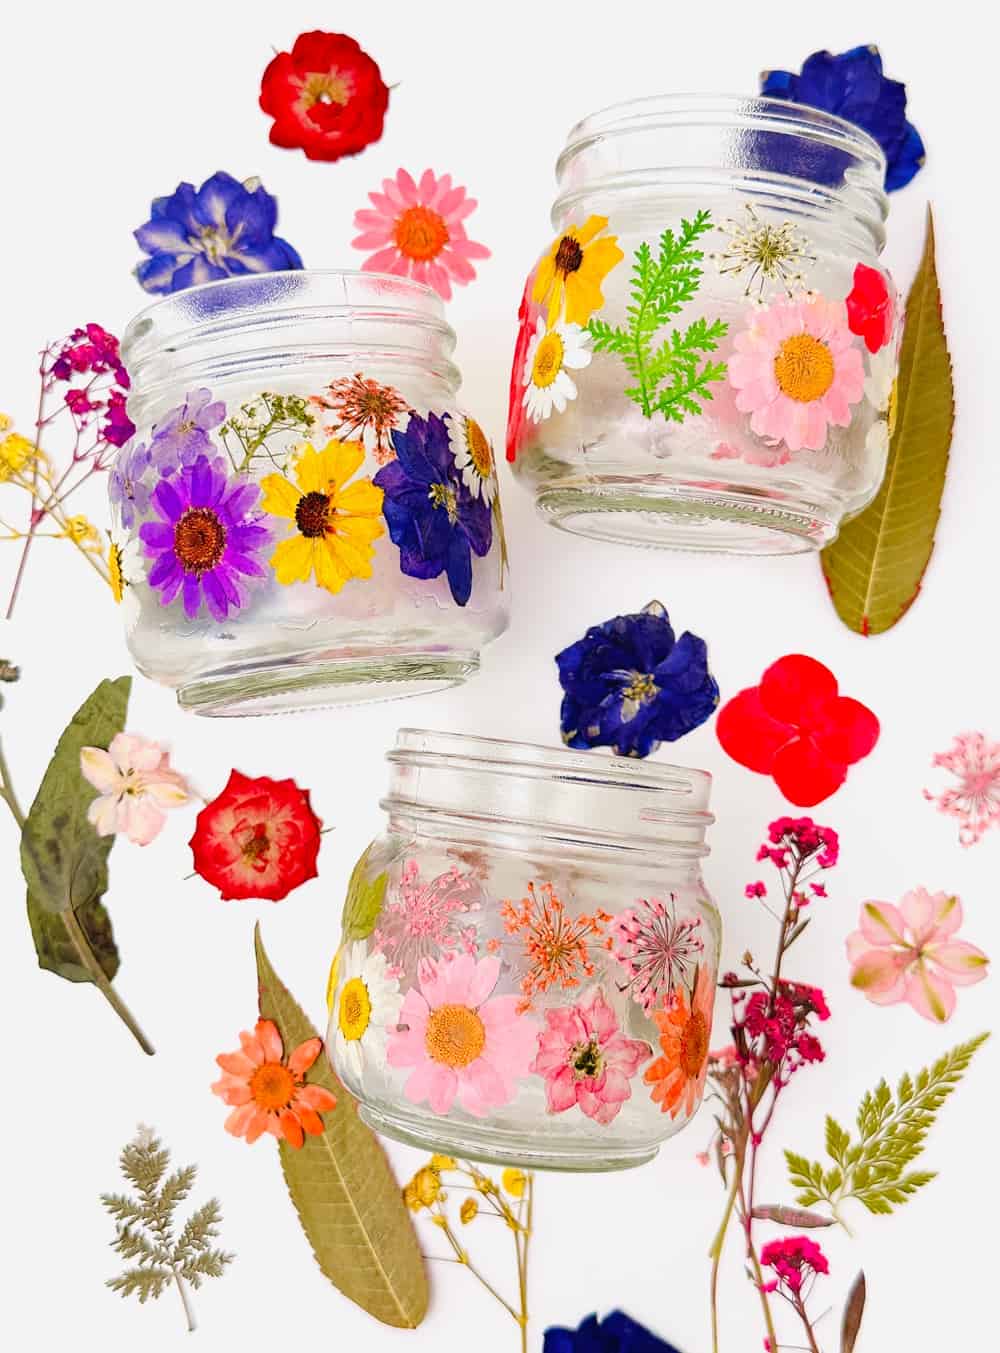 diy pressed flower jars